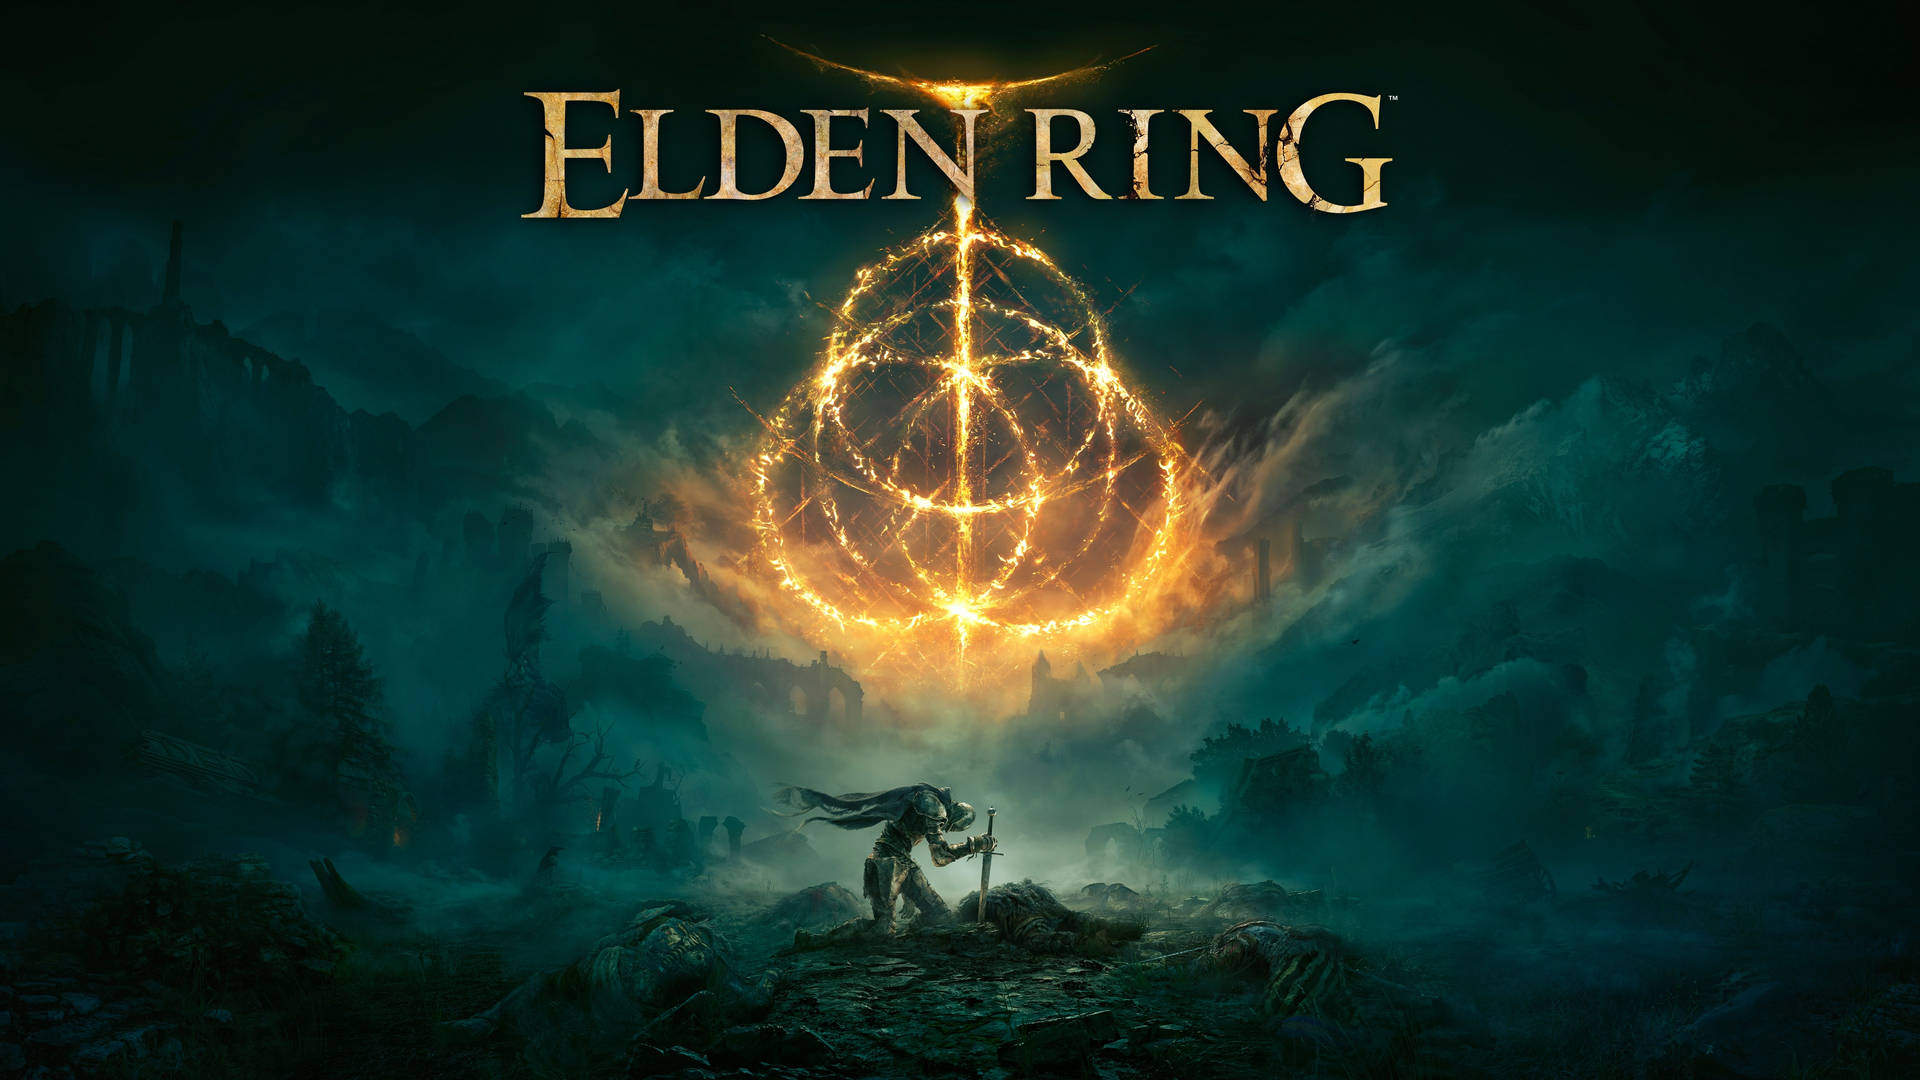 Free Elden Ring Wallpaper Downloads, [100+] Elden Ring Wallpapers ...